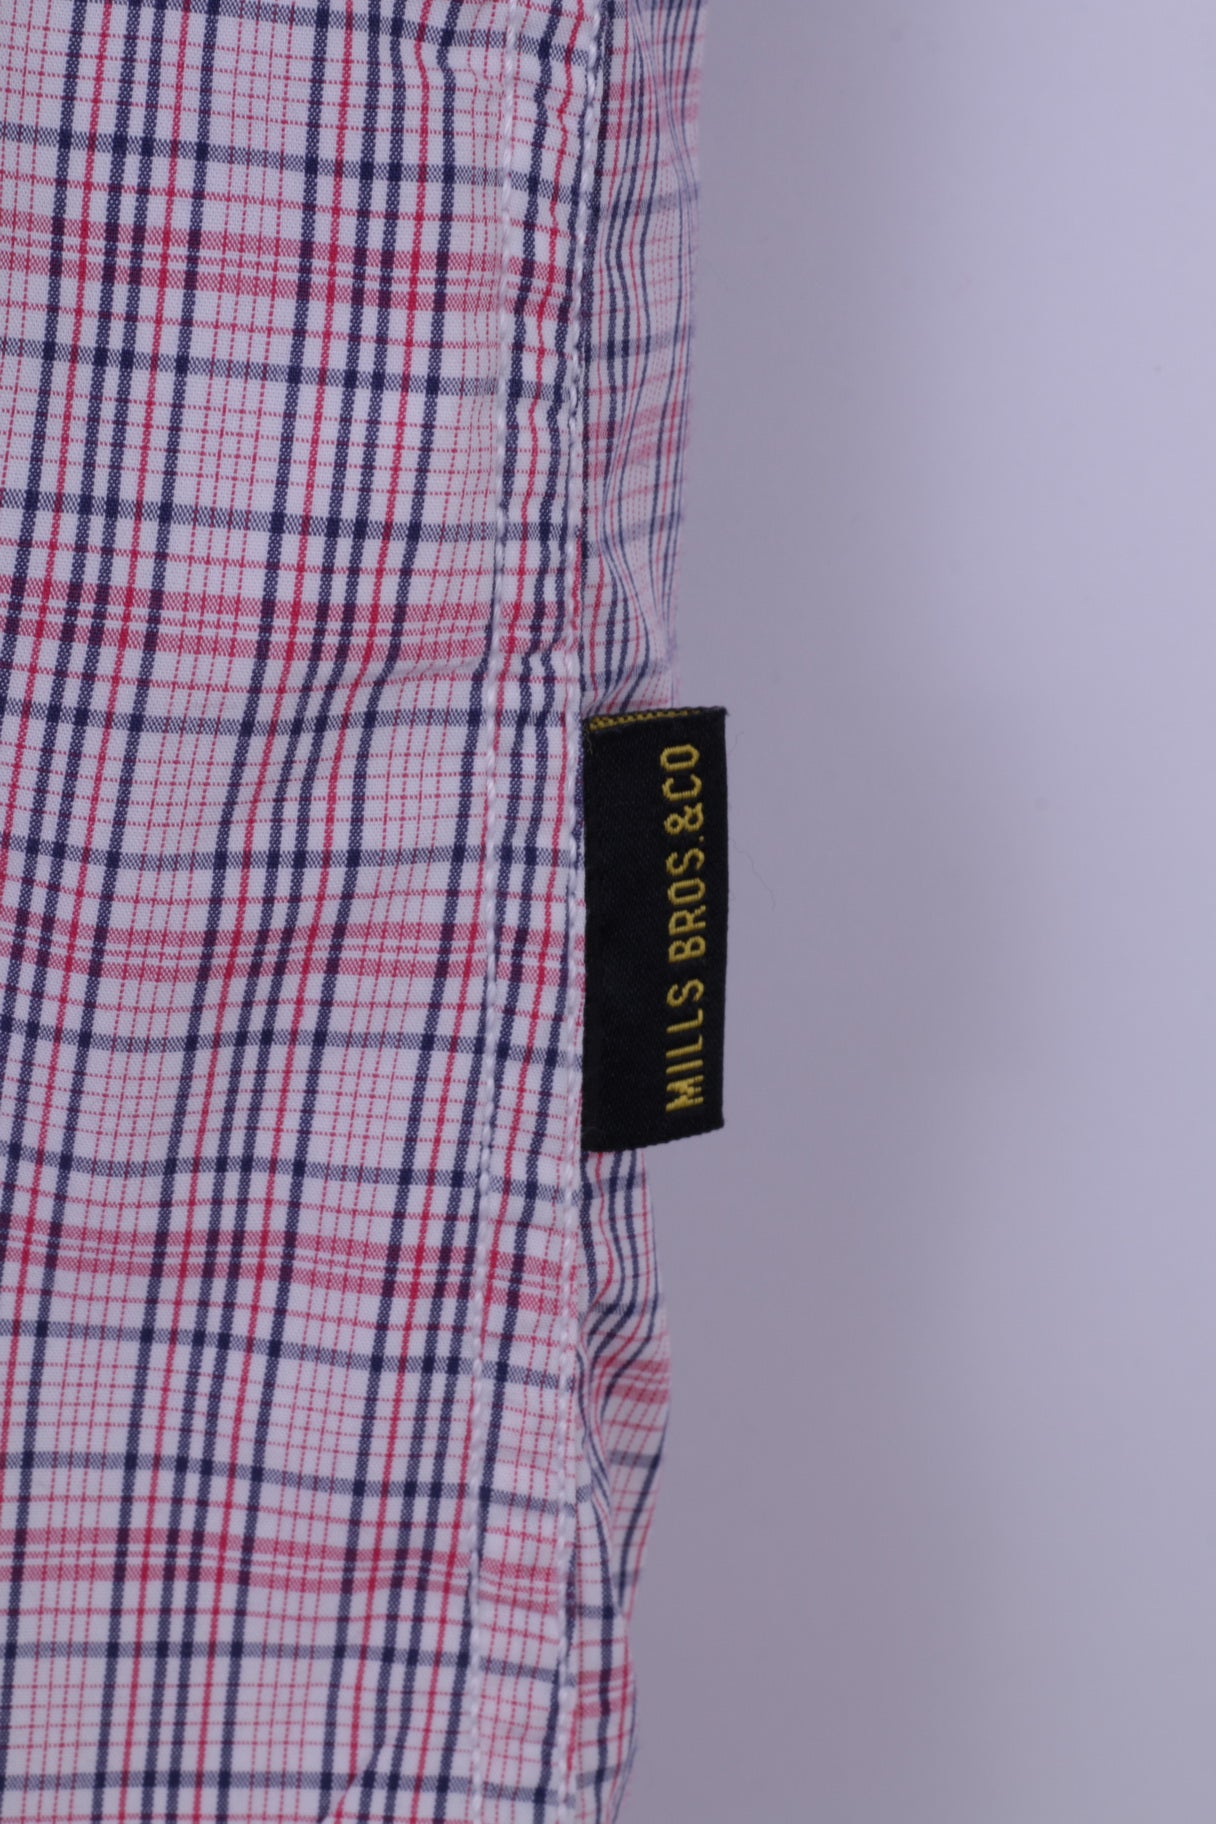 Mills Brothers Camicia casual da uomo XL (M) Cotone a quadri rossi X18 Abbigliamento vintage Manica corta